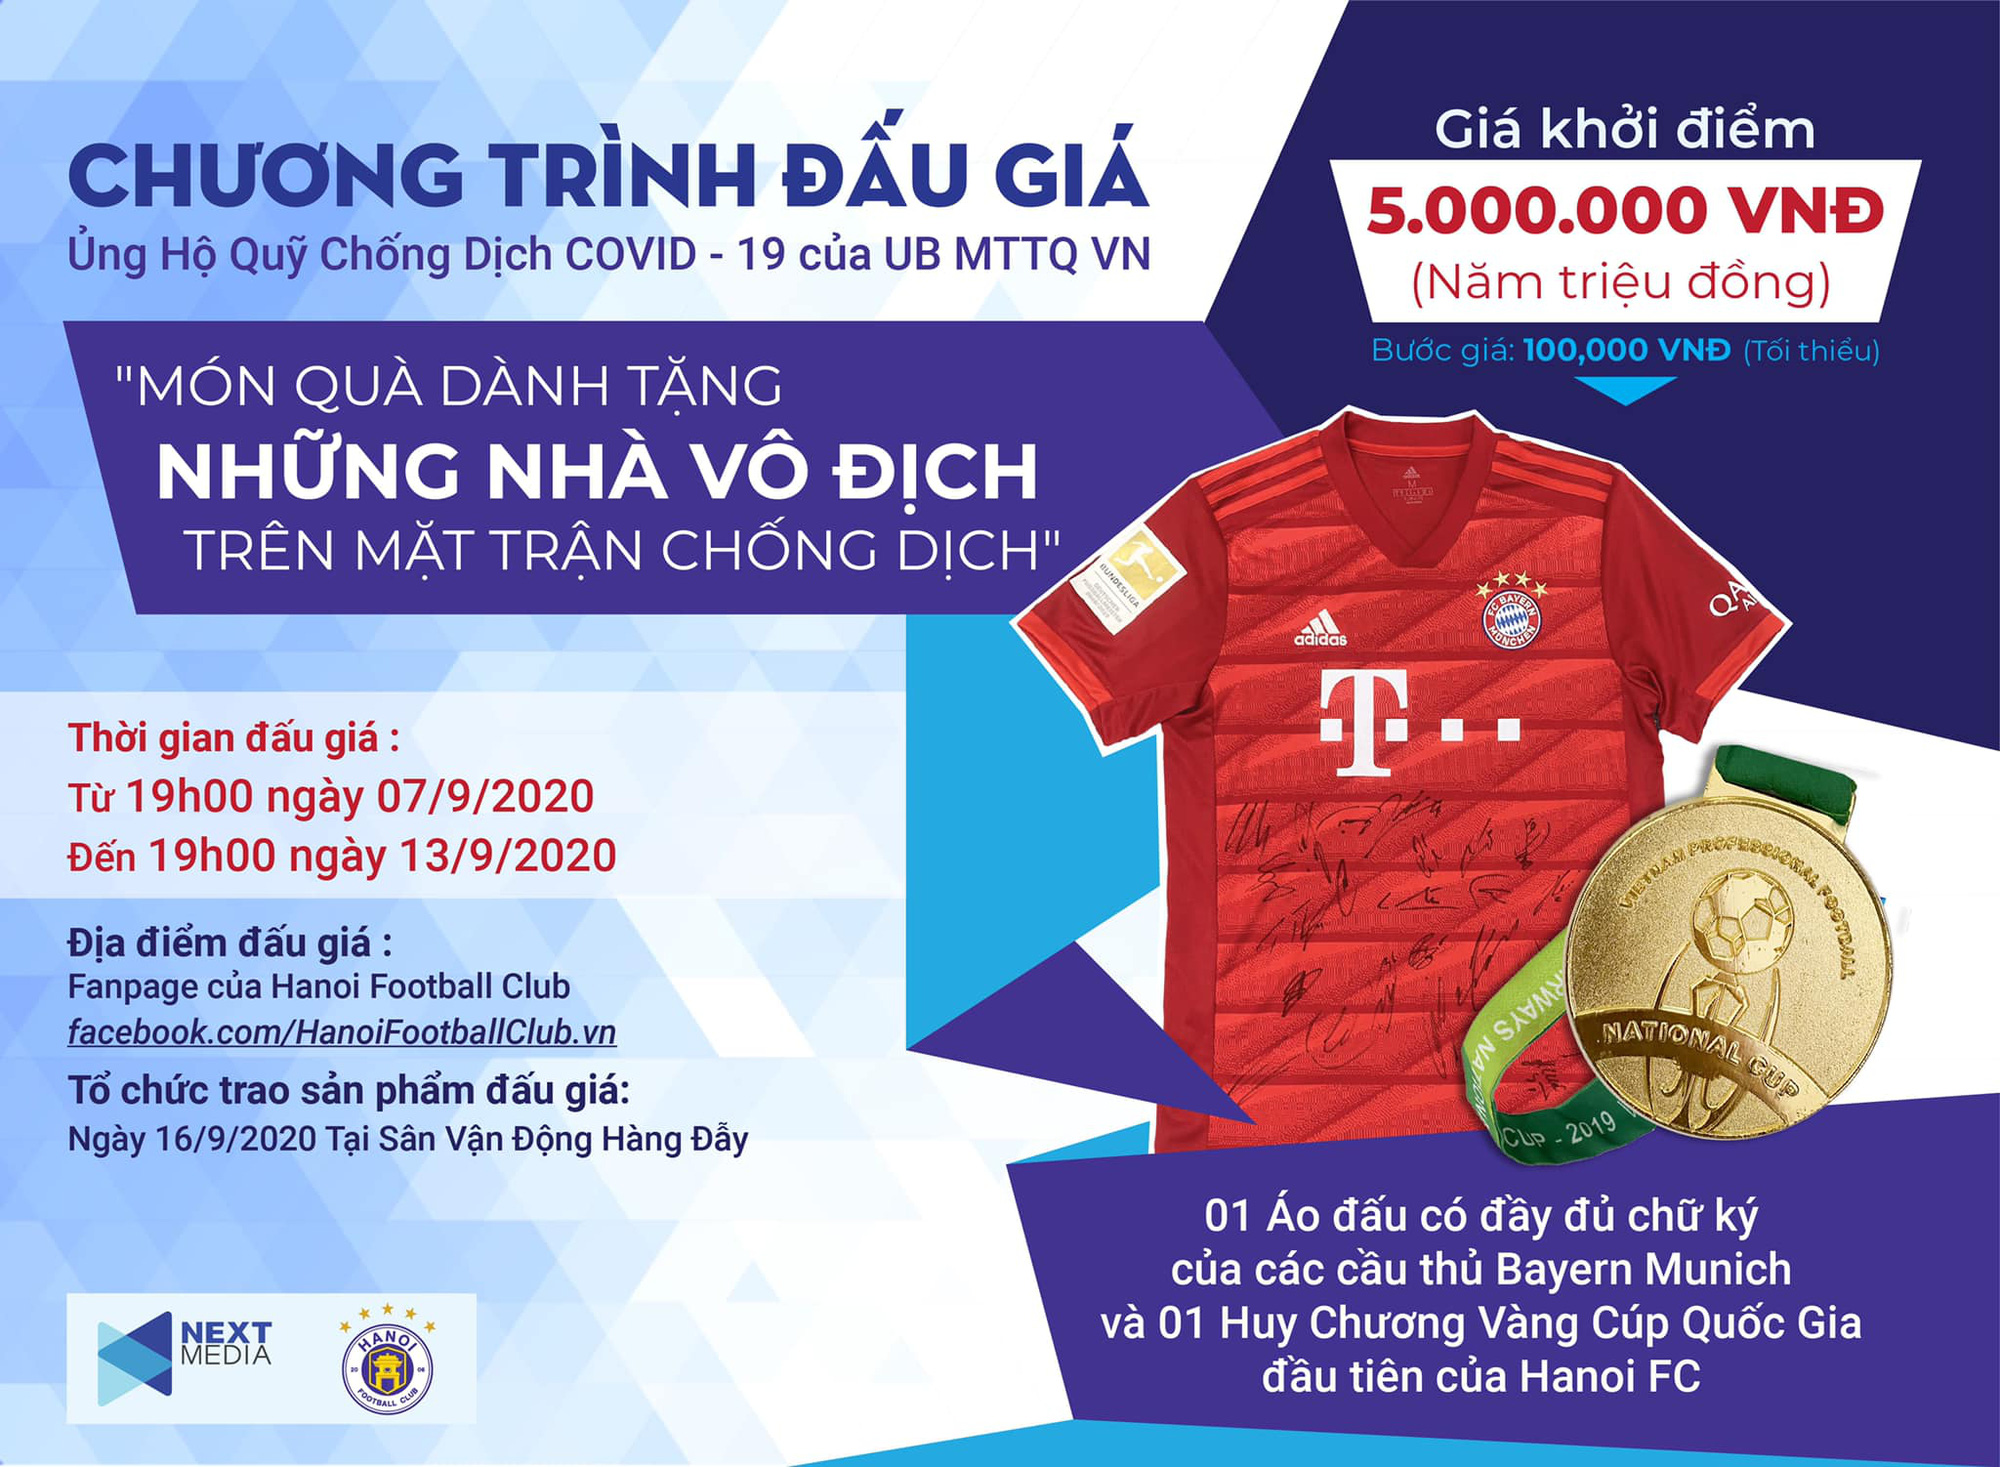 Next Media và Hà Nội FC tổ chức đấu giá vật phẩm ủng hộ công cuộc chống dịch Covid - 19 - Ảnh 1.